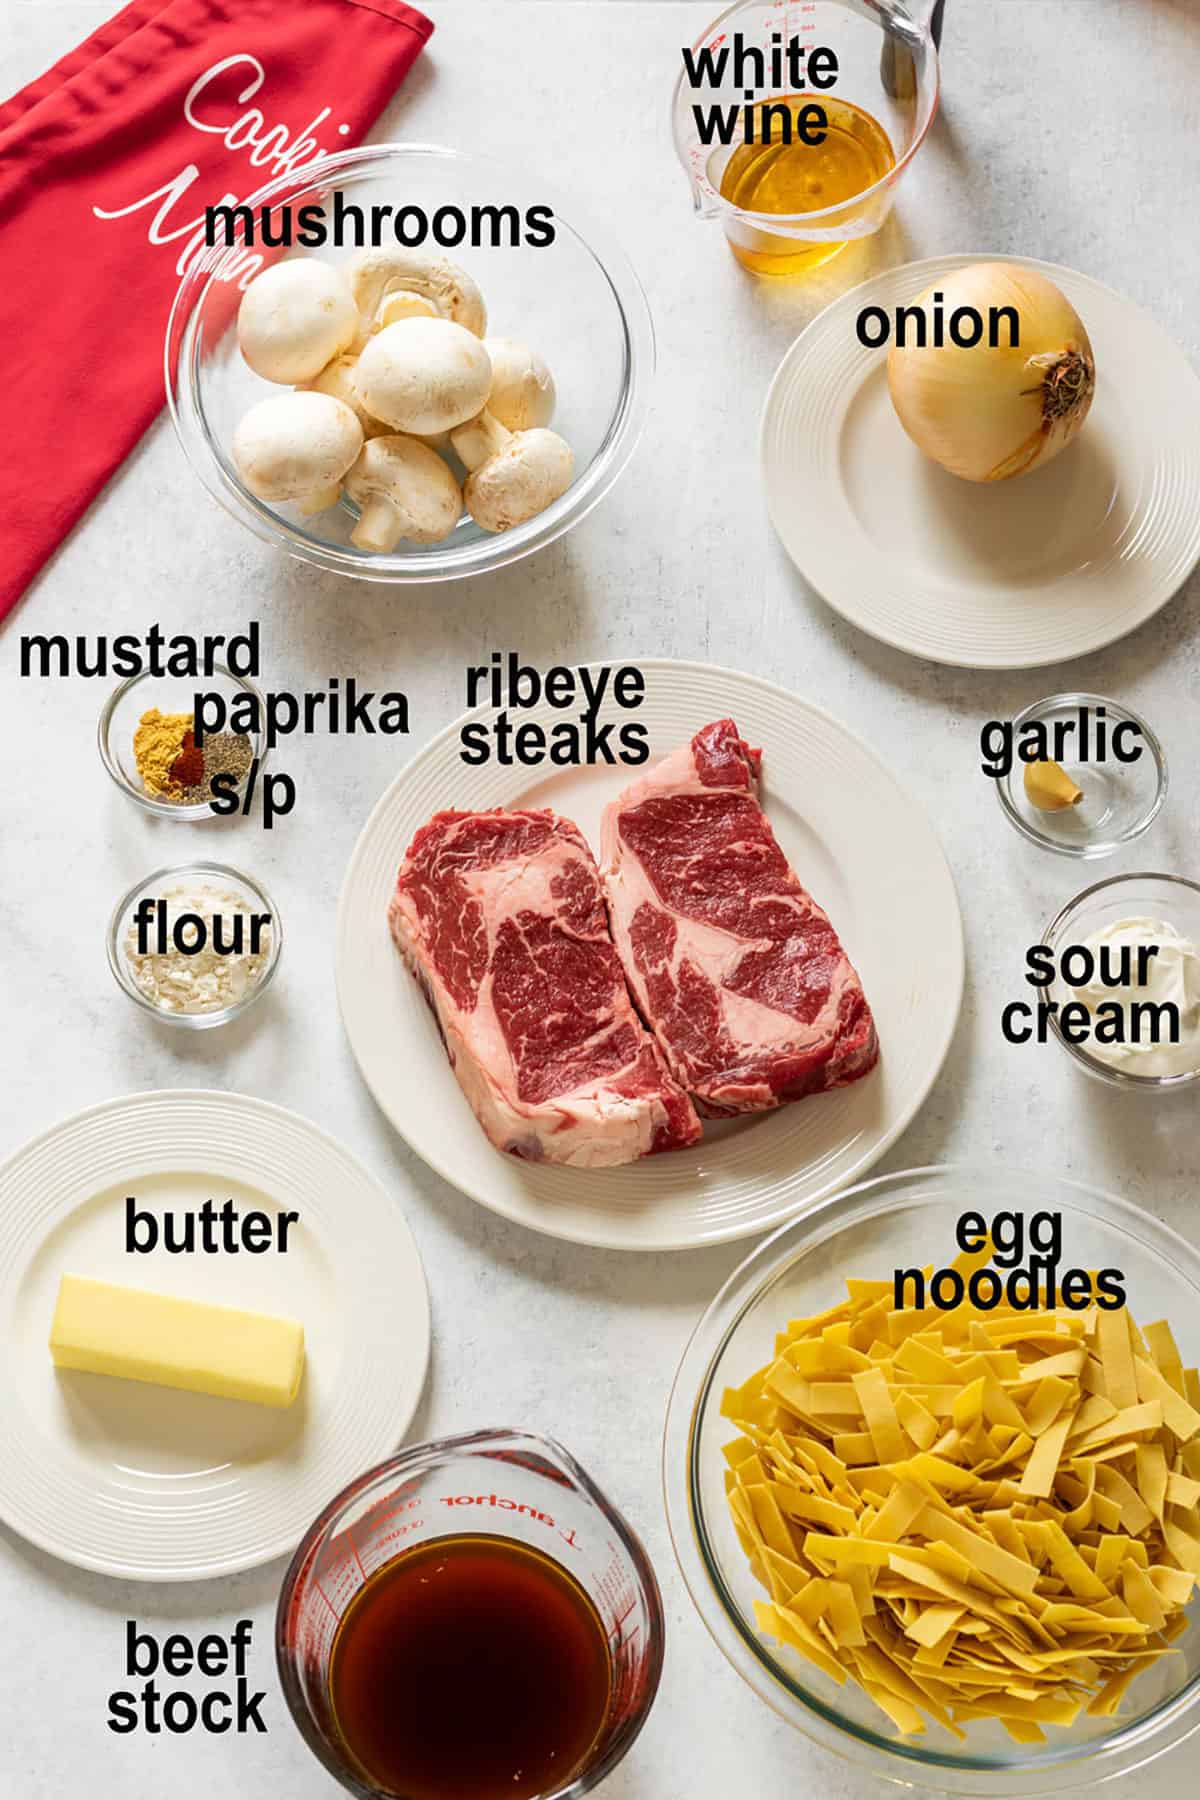 raw steak, noodles, wine, beef stock, mushrooms, onions, sour cream, seasonings